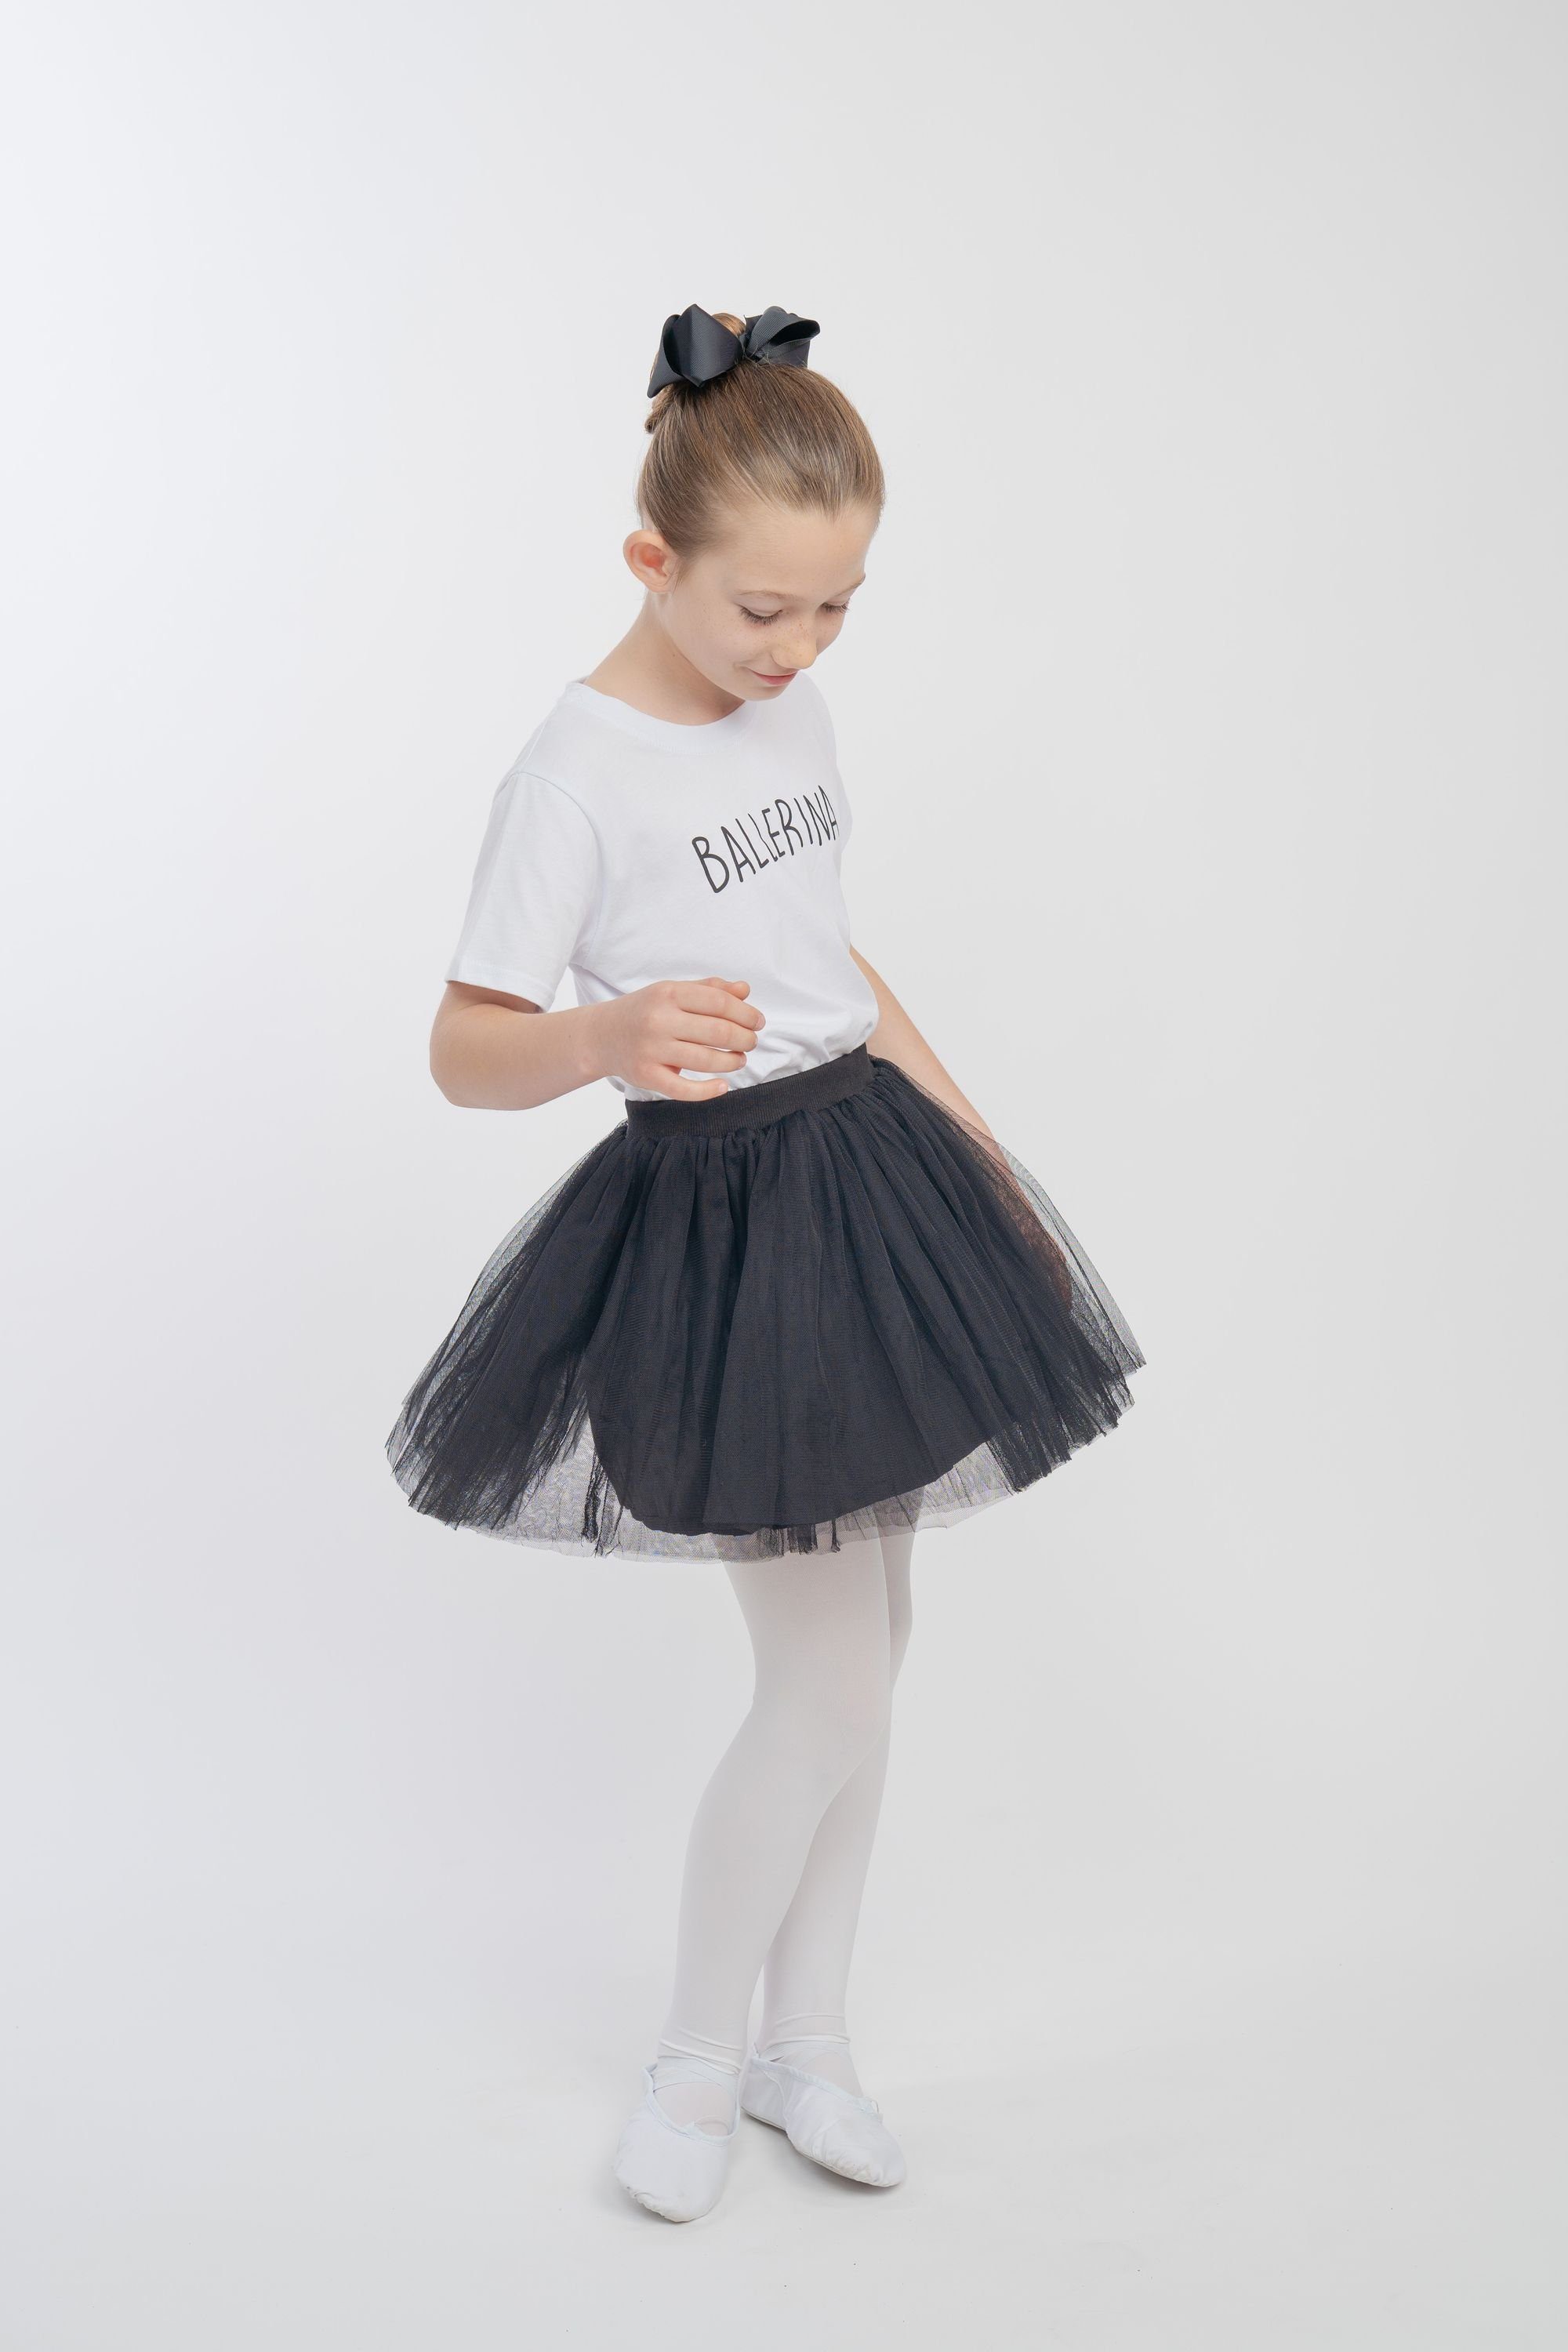 weich Tüllrock Unterrock Ballerina blickdichtem Little tanzmuster Tüllrock aus mit besonders schwarz Tüll weichem